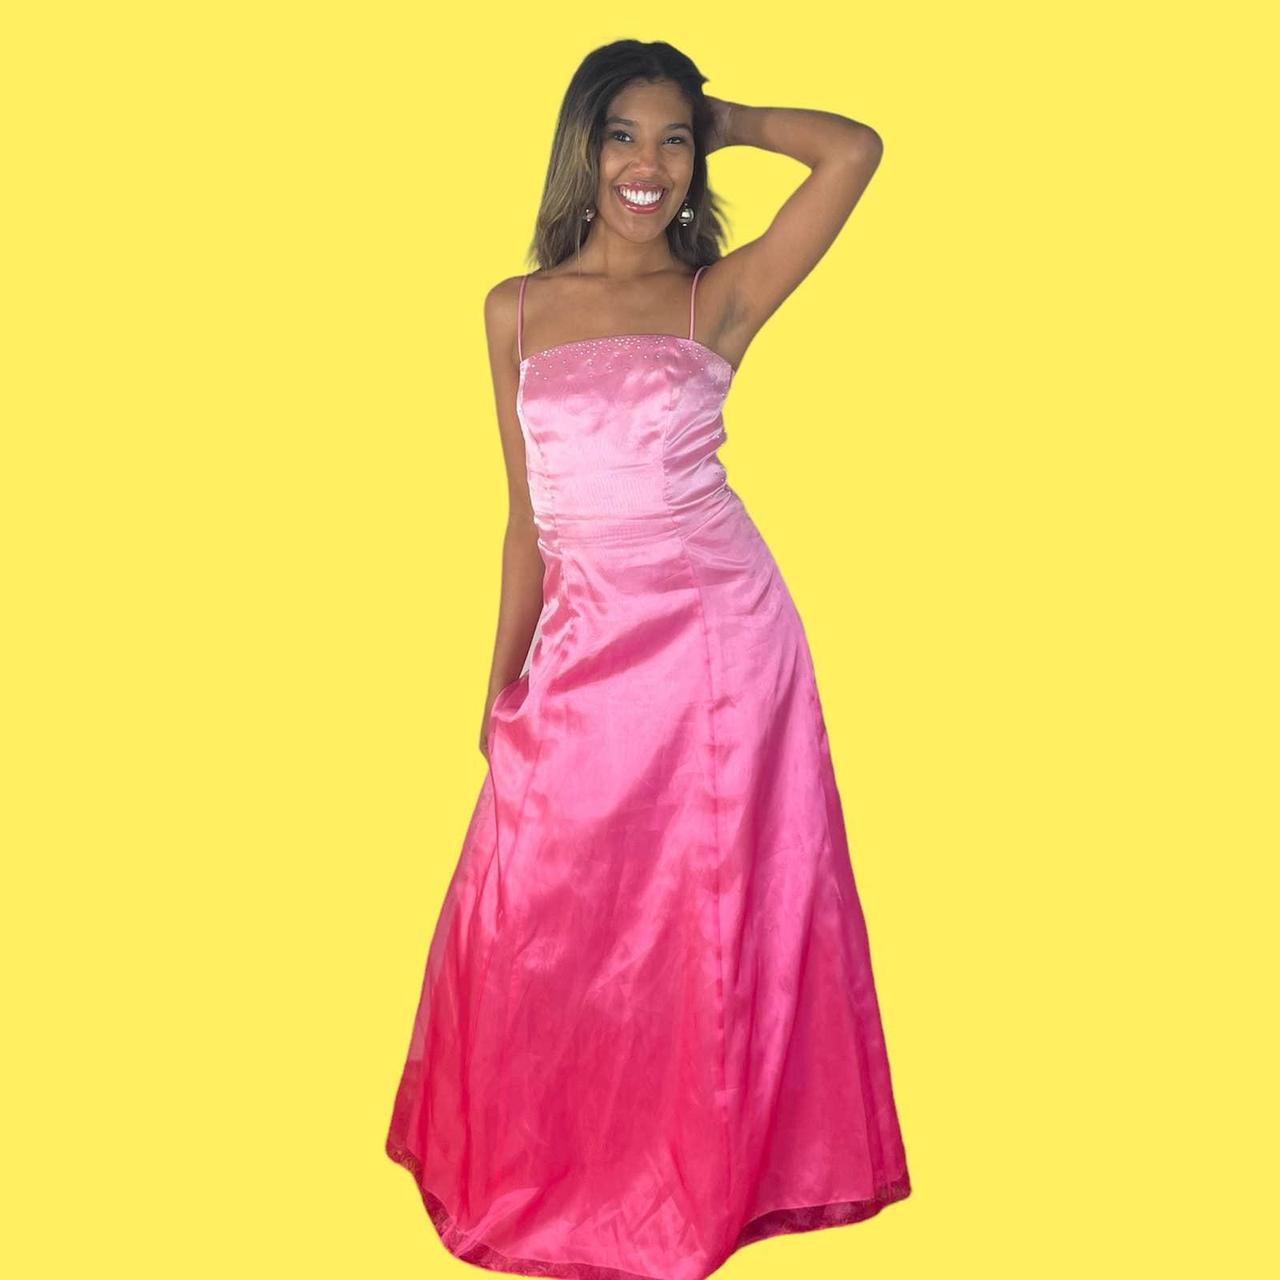 Jump Women's Pink and Silver Dress | Depop